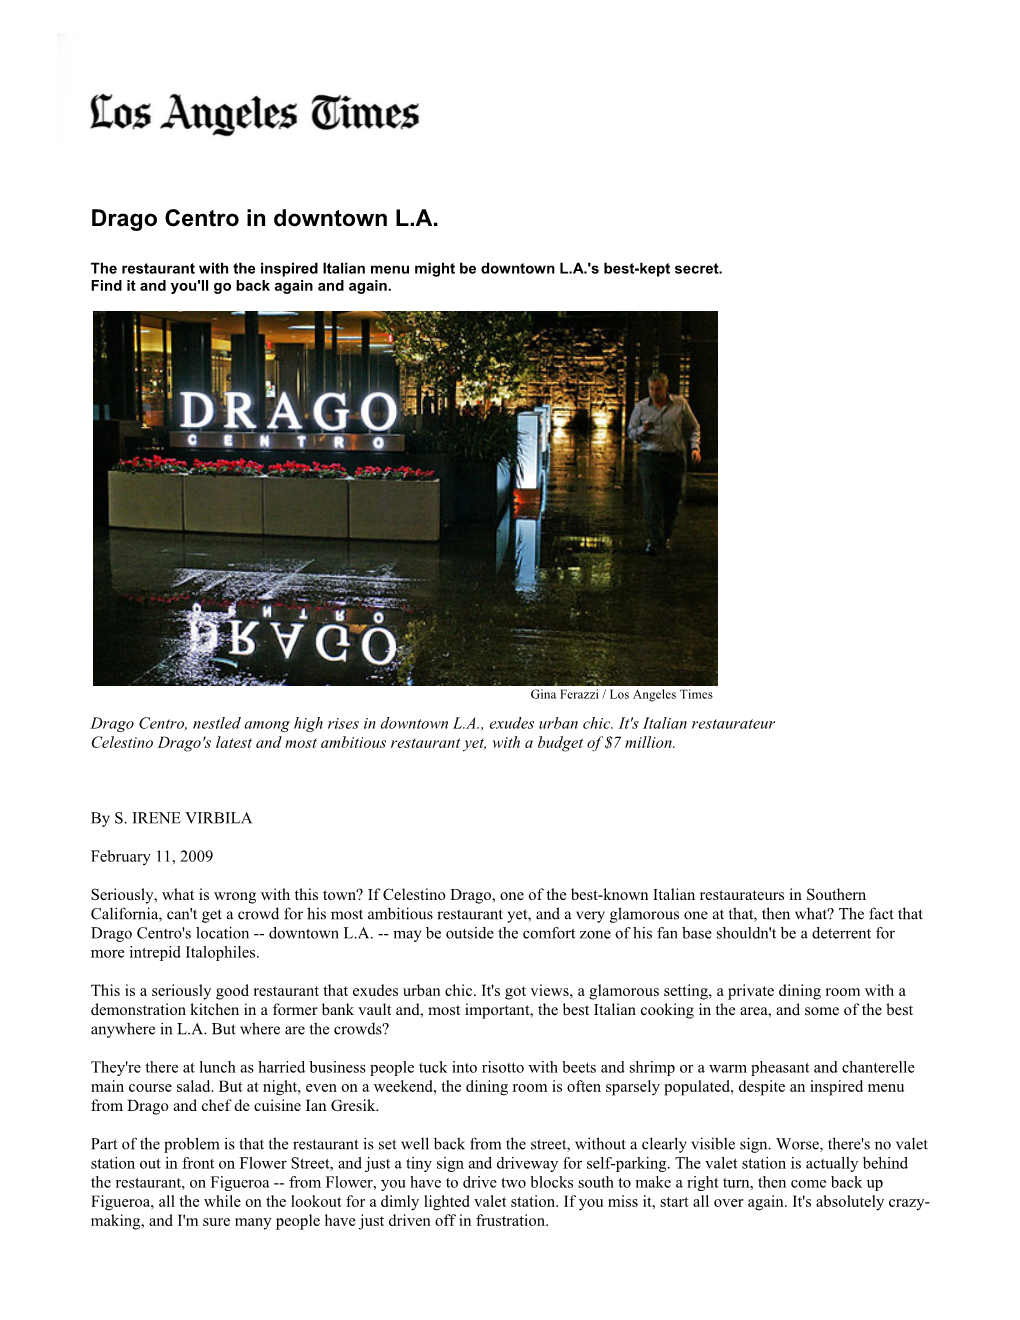 Drago Centro in Downtown L.A